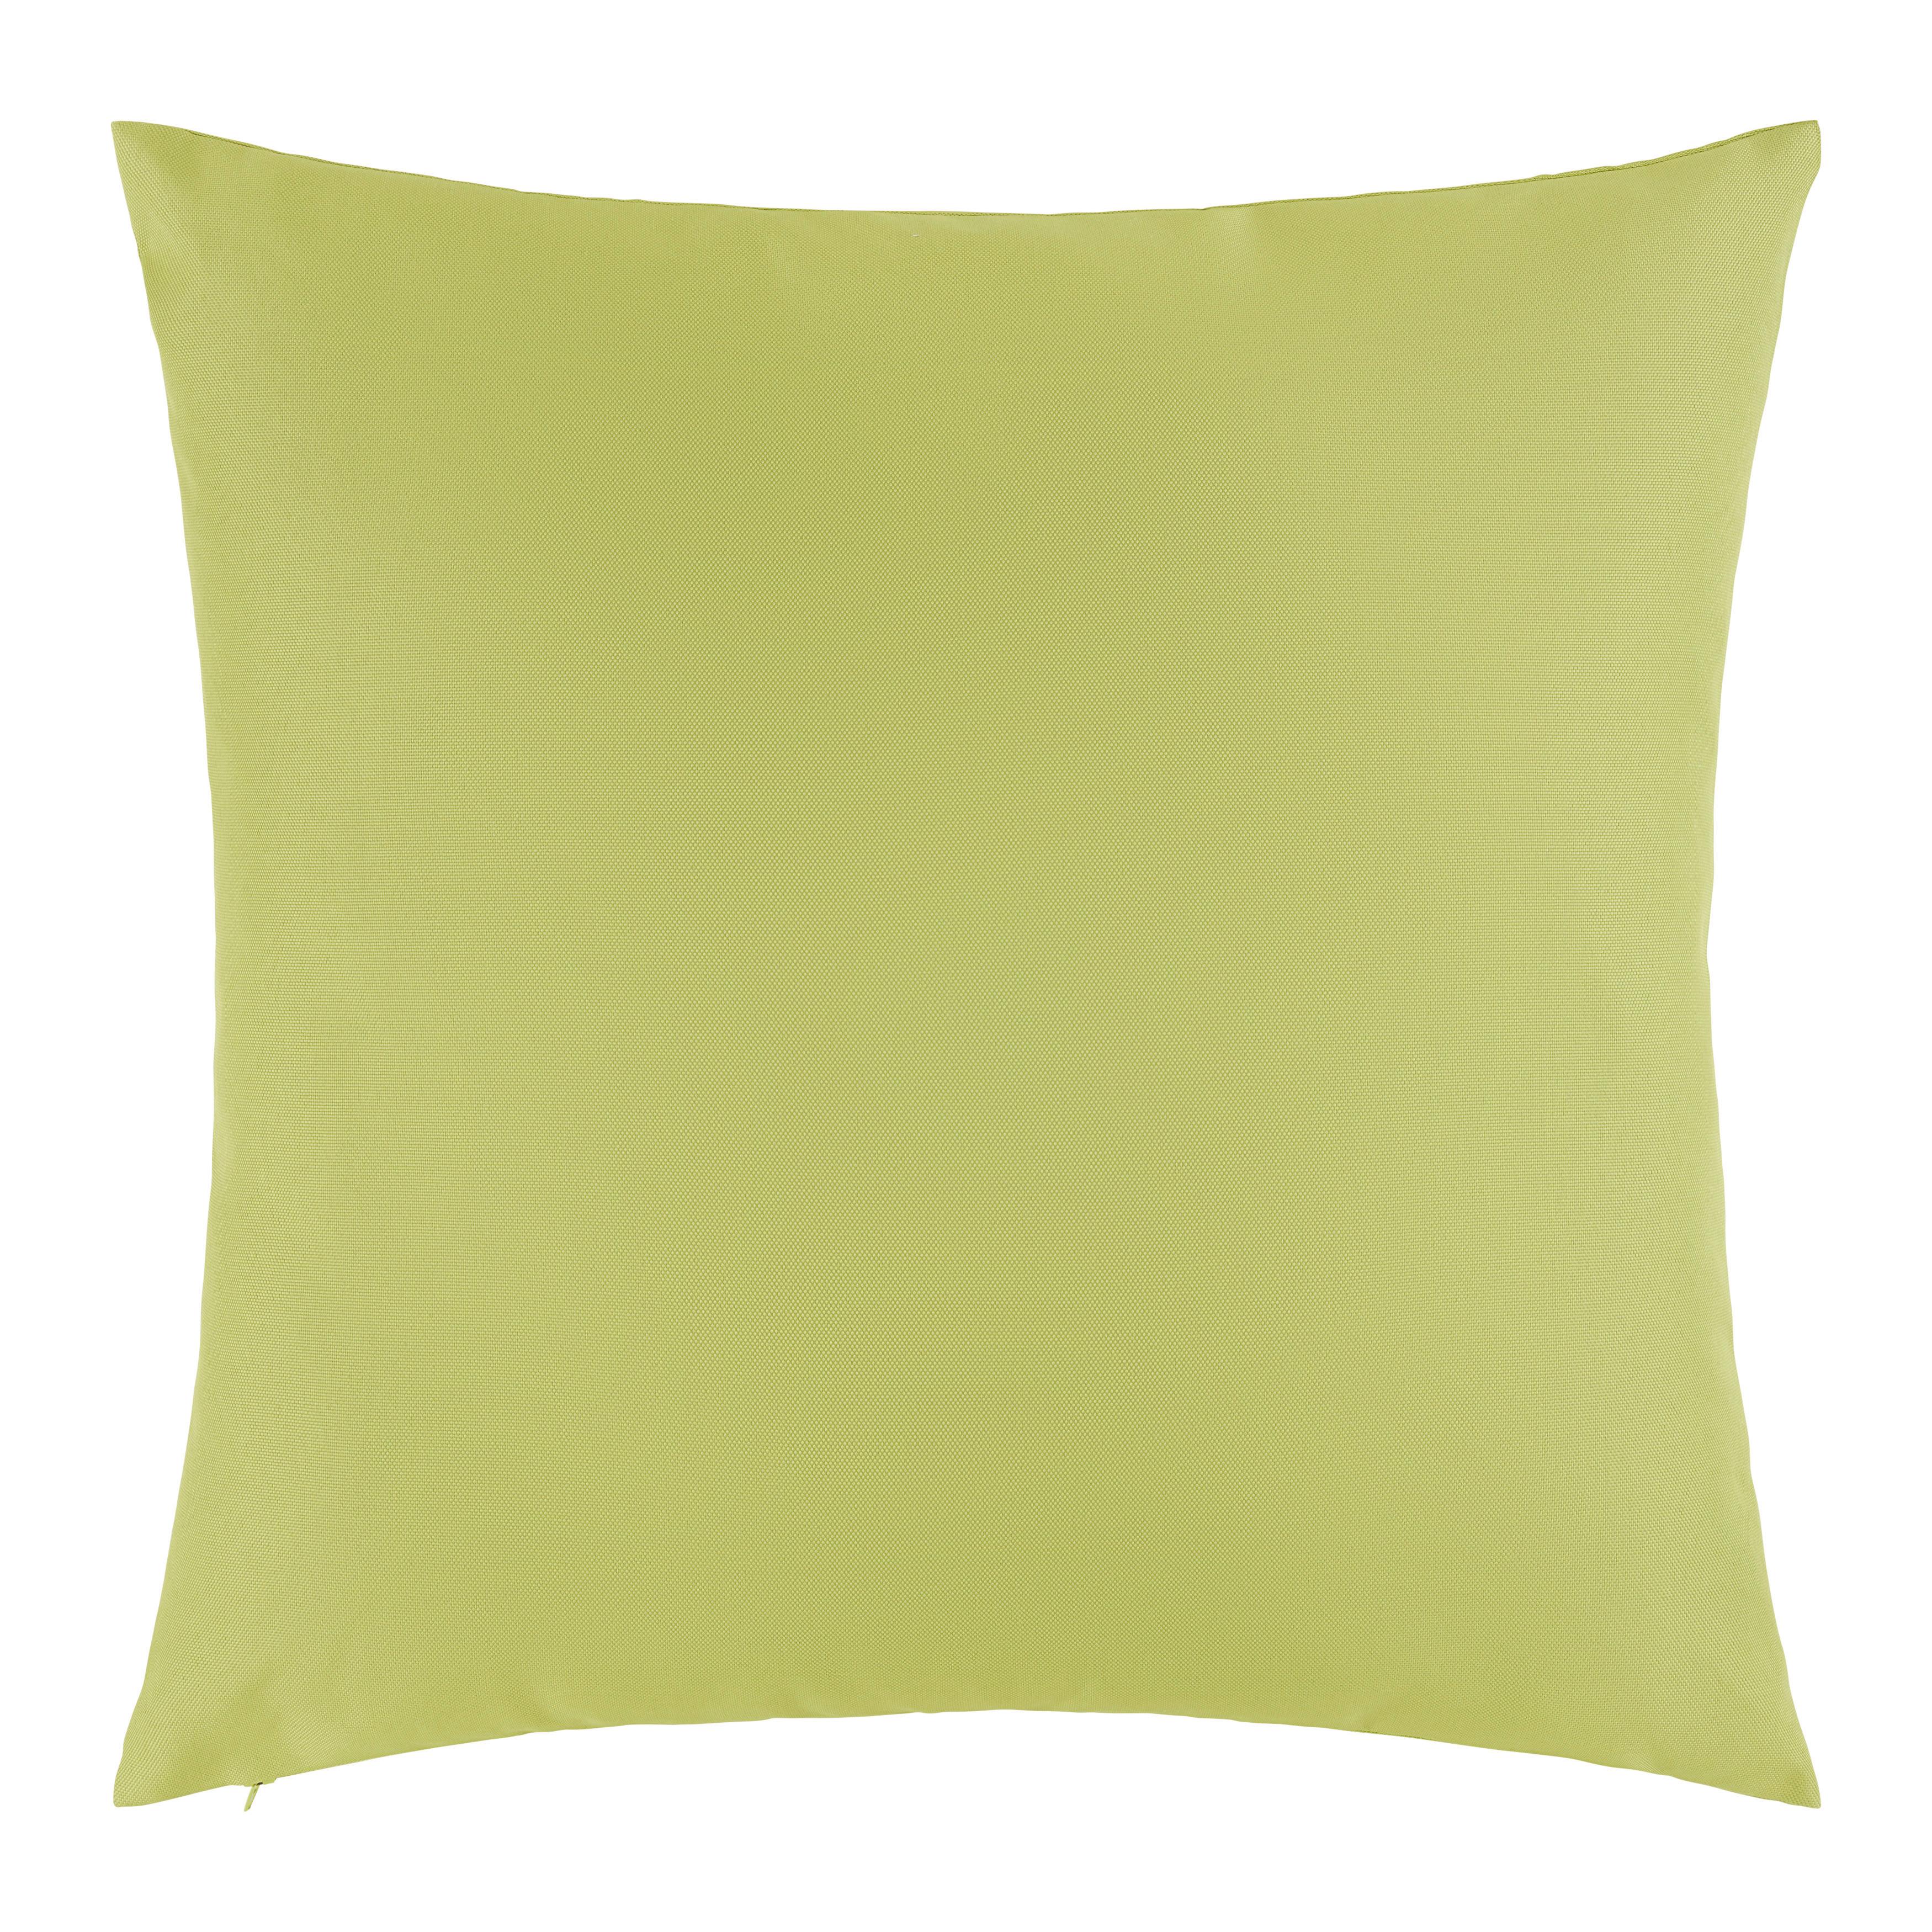 Venkovní Polštář Dodo, 45/45cm, Zelená - zelená, Konvenční, textil (45/45cm) - Modern Living